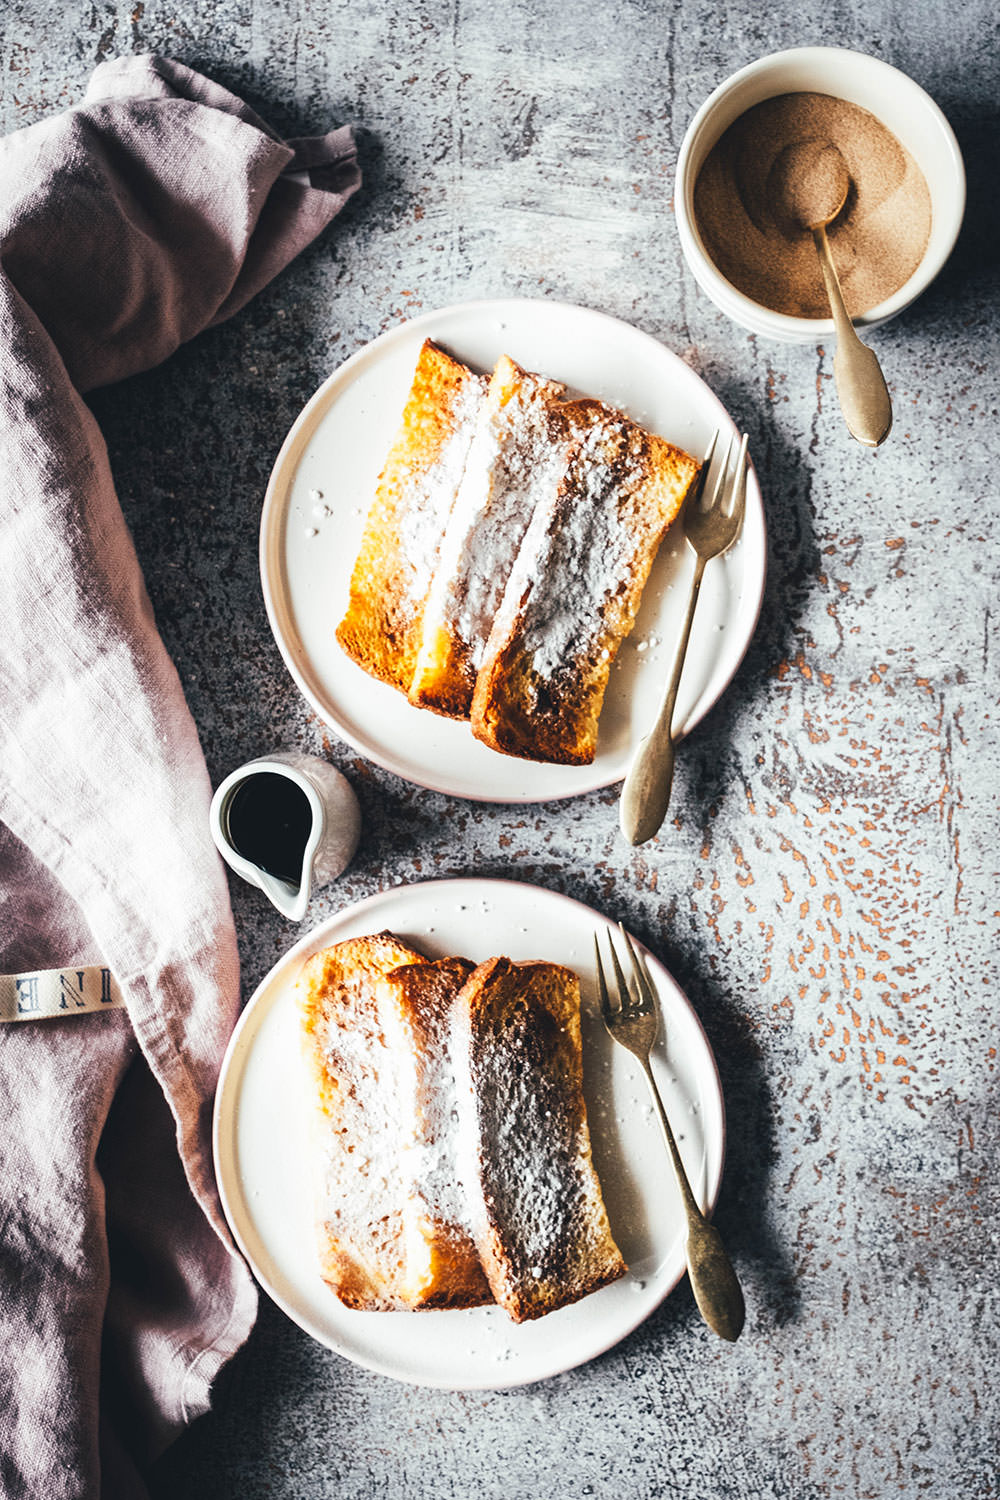 French Toast Sticks aus der Heißluftfritteuse – Airfryer Arme Ritter -  moey's kitchen foodblog